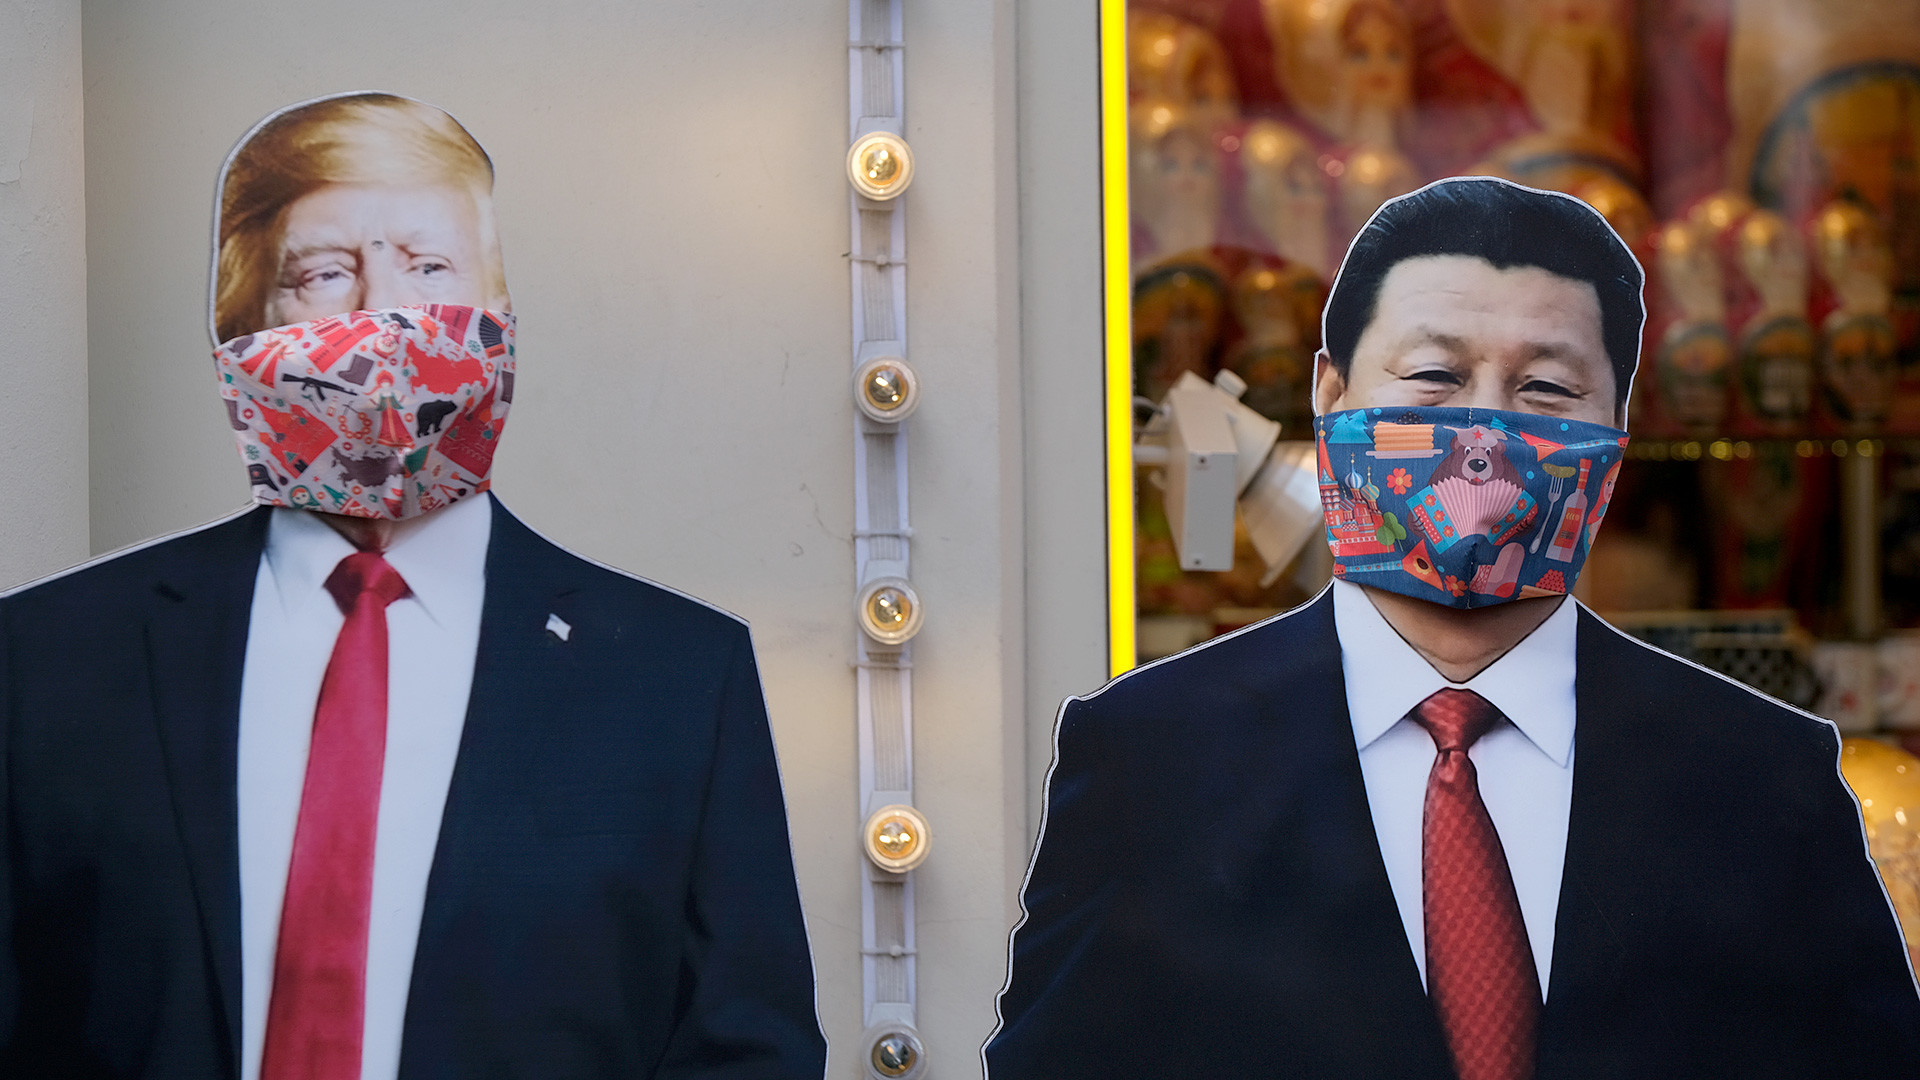 Displays de papelão com máscaras em loja de suvenires em Moscou